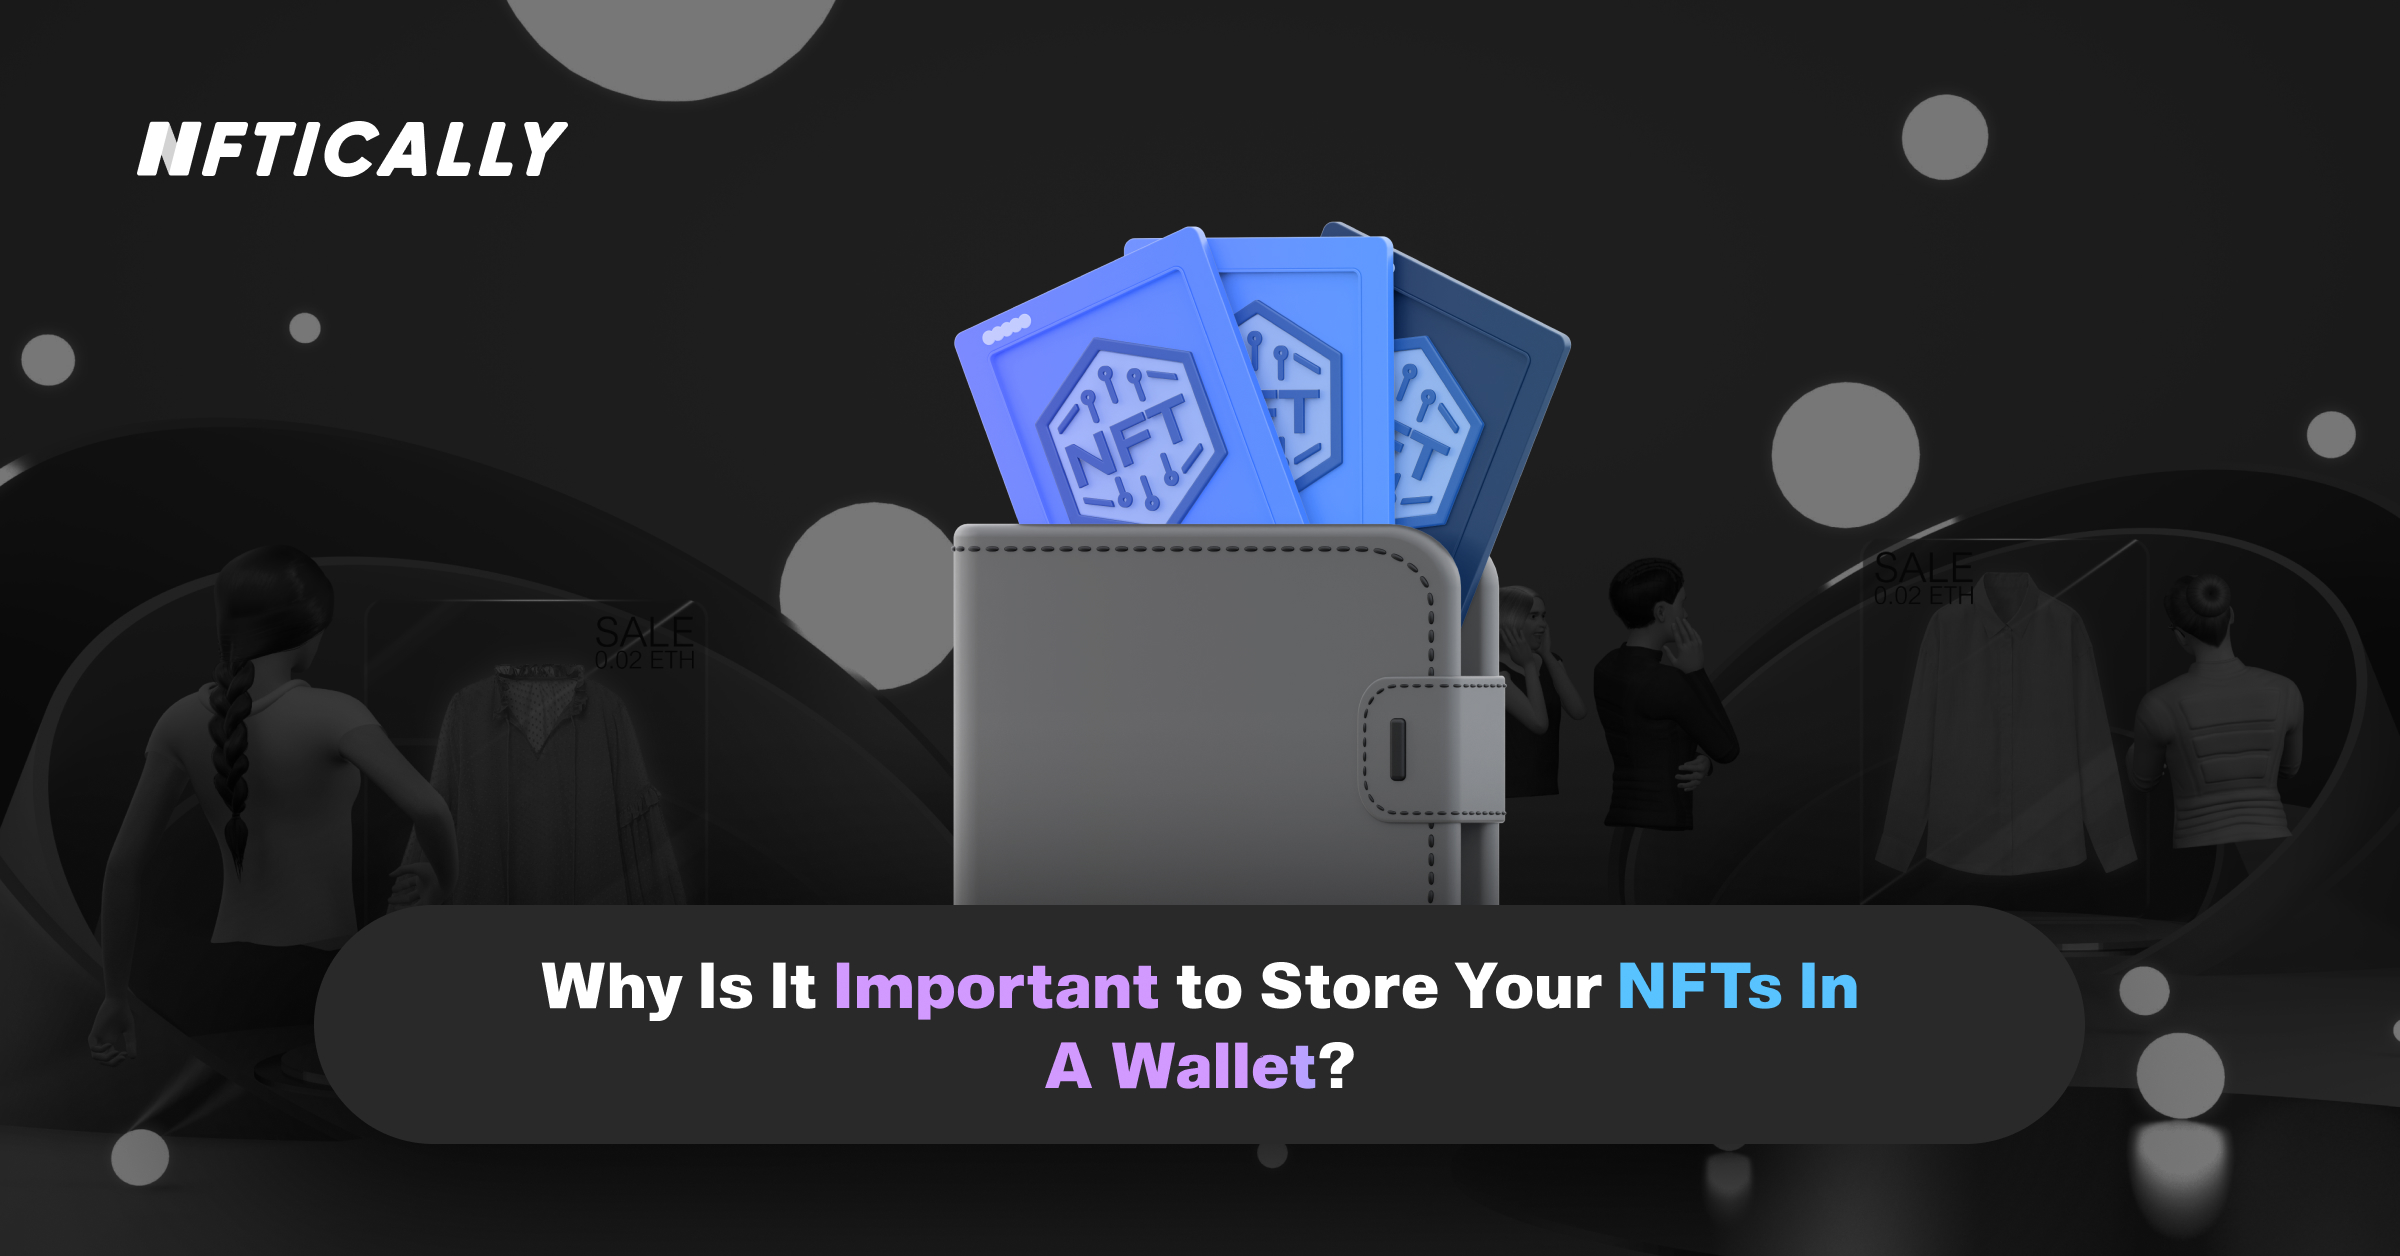 ¿Por qué es importante guardar sus NFT en una cartera?